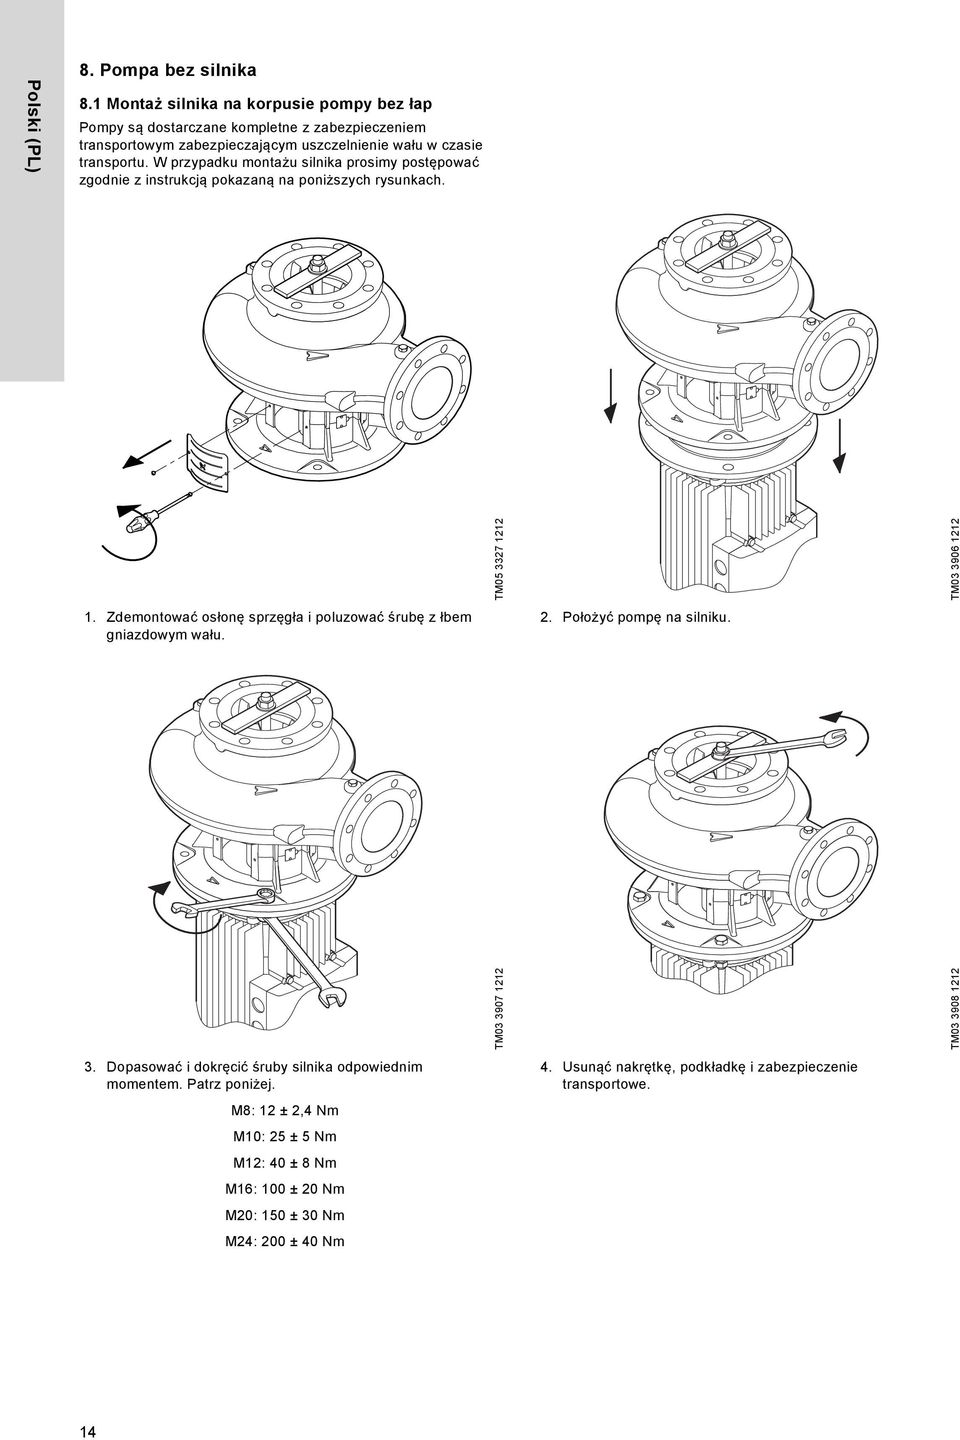 W przypadku montażu silnika prosimy postępować zgodnie z instrukcją pokazaną na poniższych rysunkach. TM05 3327 1212 TM03 3906 1212 1.